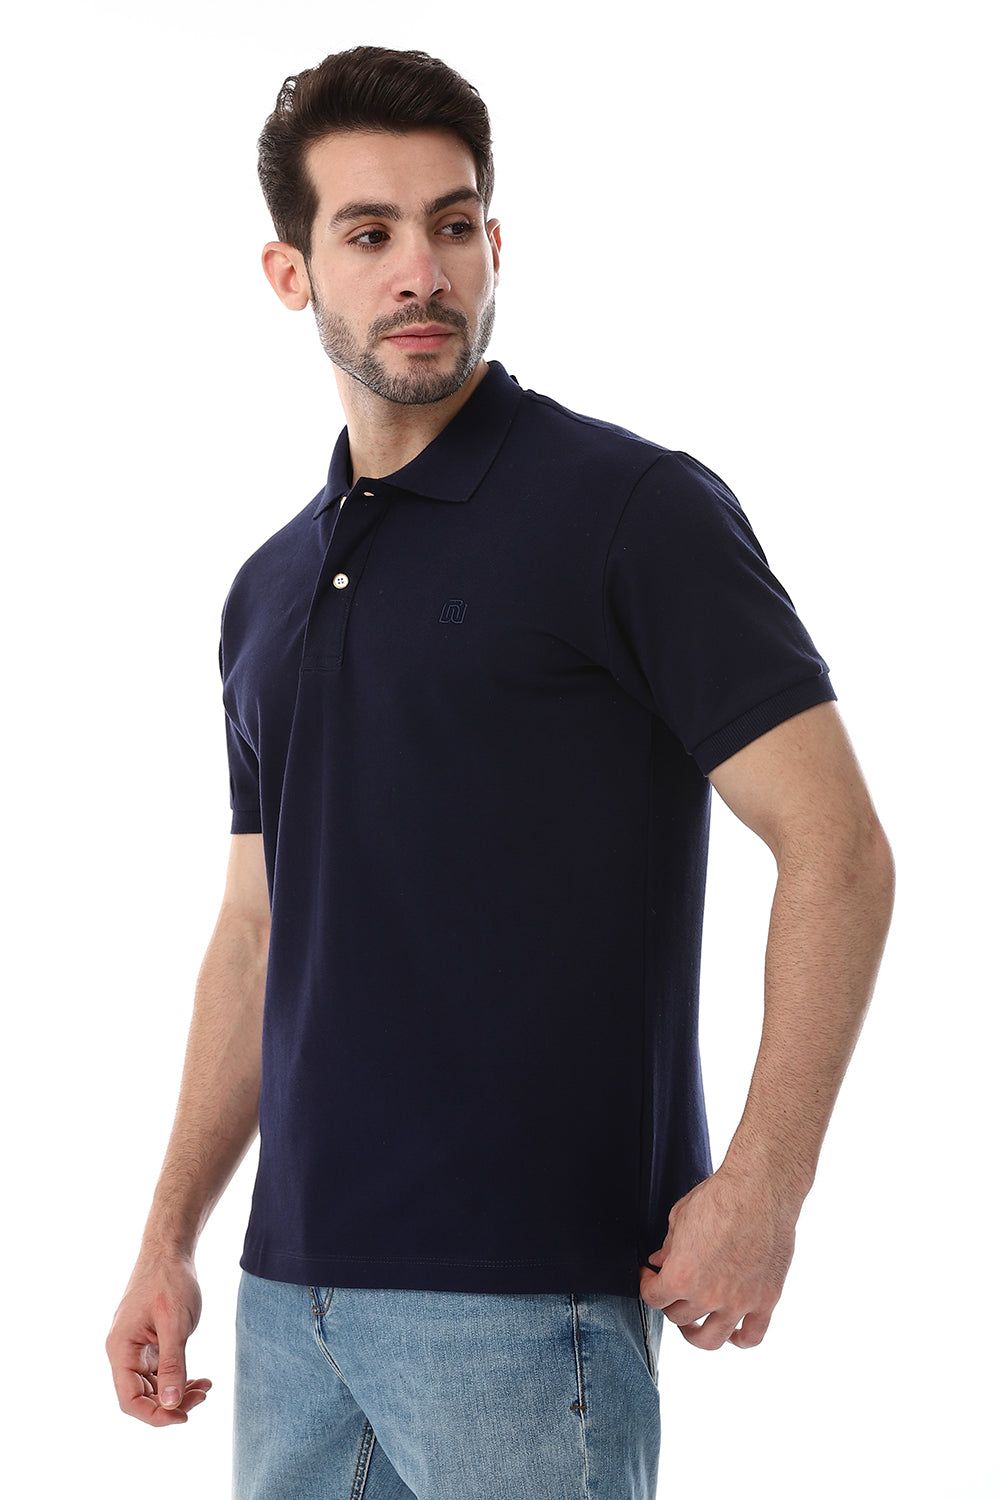 Pique Pattern Turn Down Collar Polo Shirt